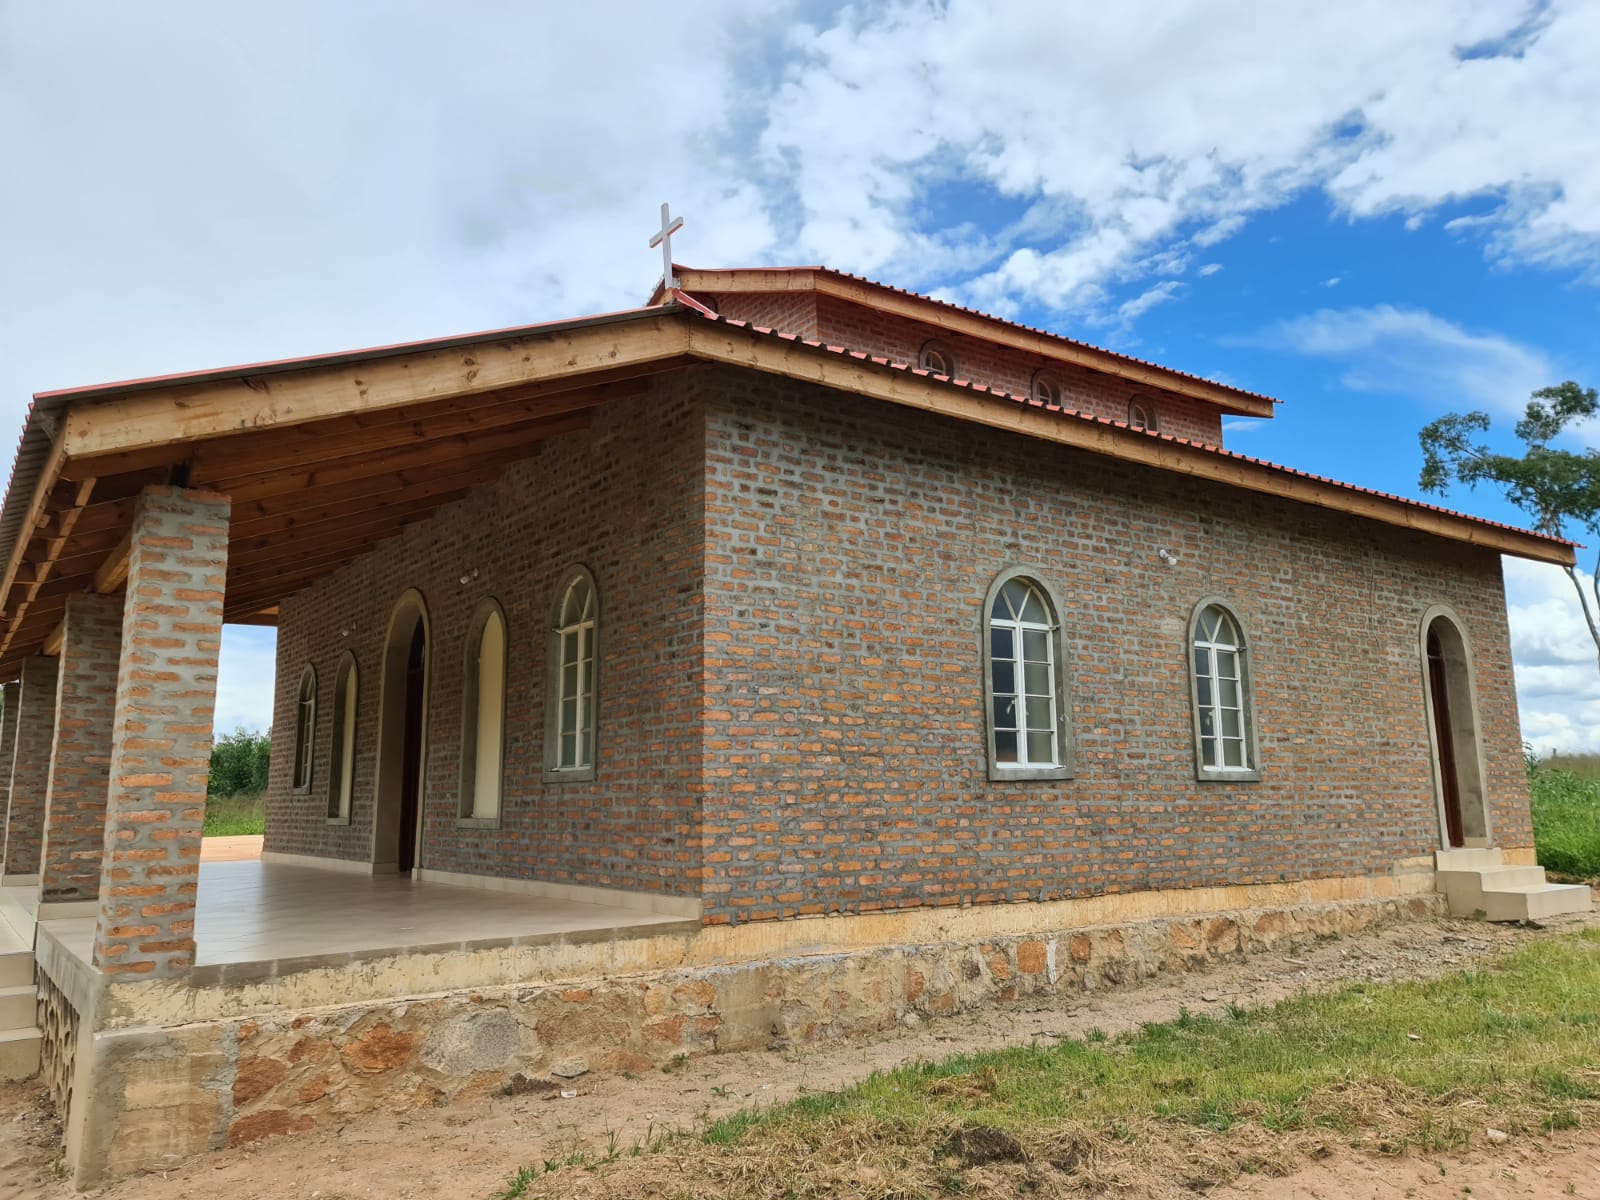 Întâmpinarea Domnului în cadrul Mănăstirii Centrului Misionar Ortodox din Kidamali